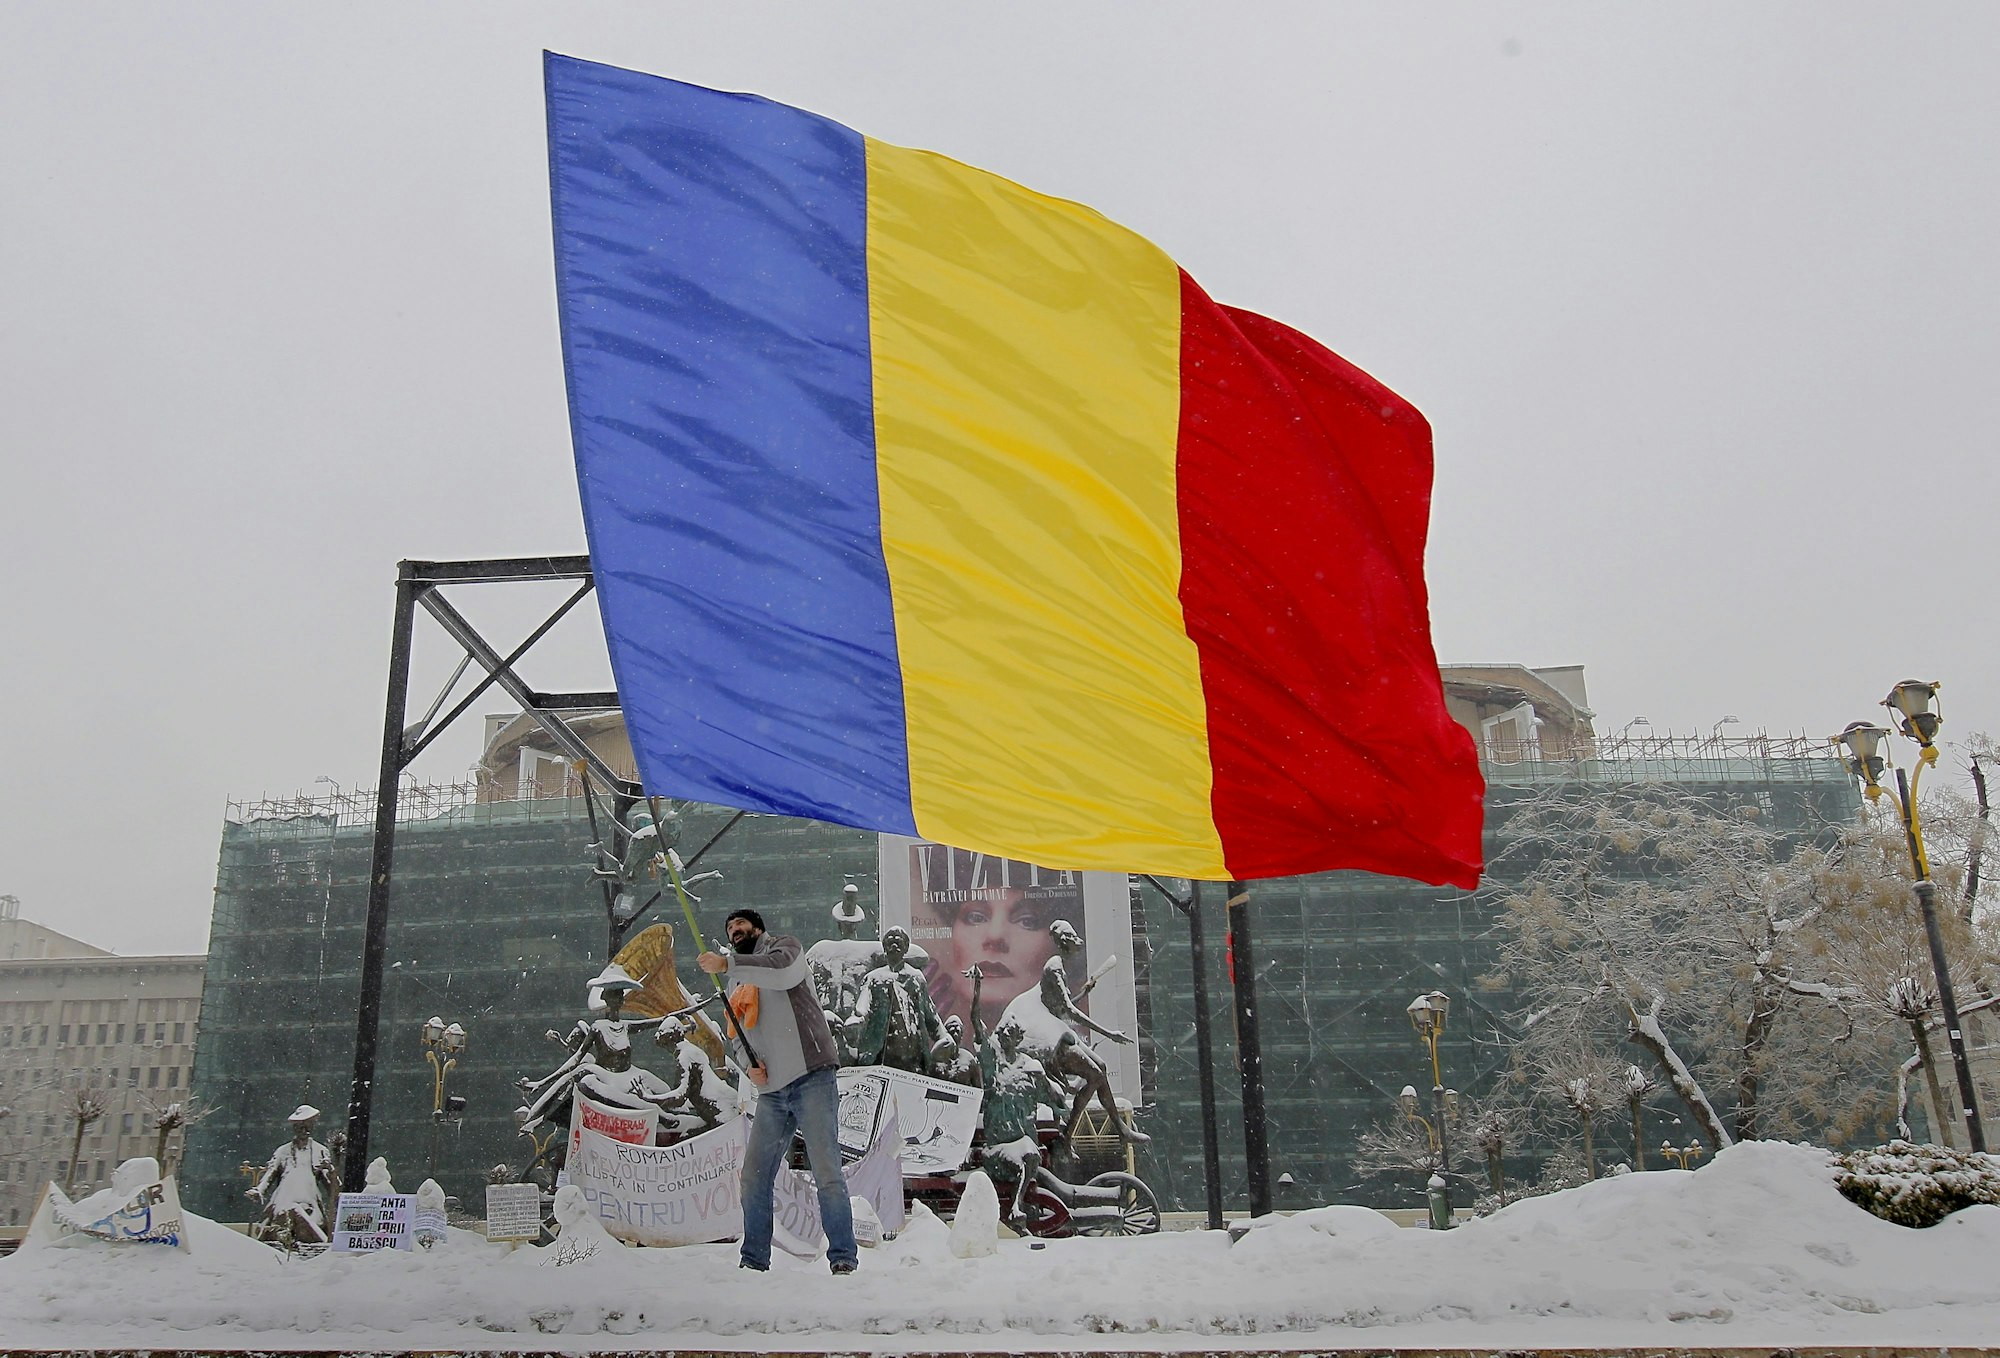 Ein Mann schwenkt eine riesige rumänische Flagge. Hinter ihm im Schnee befinden sich beschriftete Plakate.